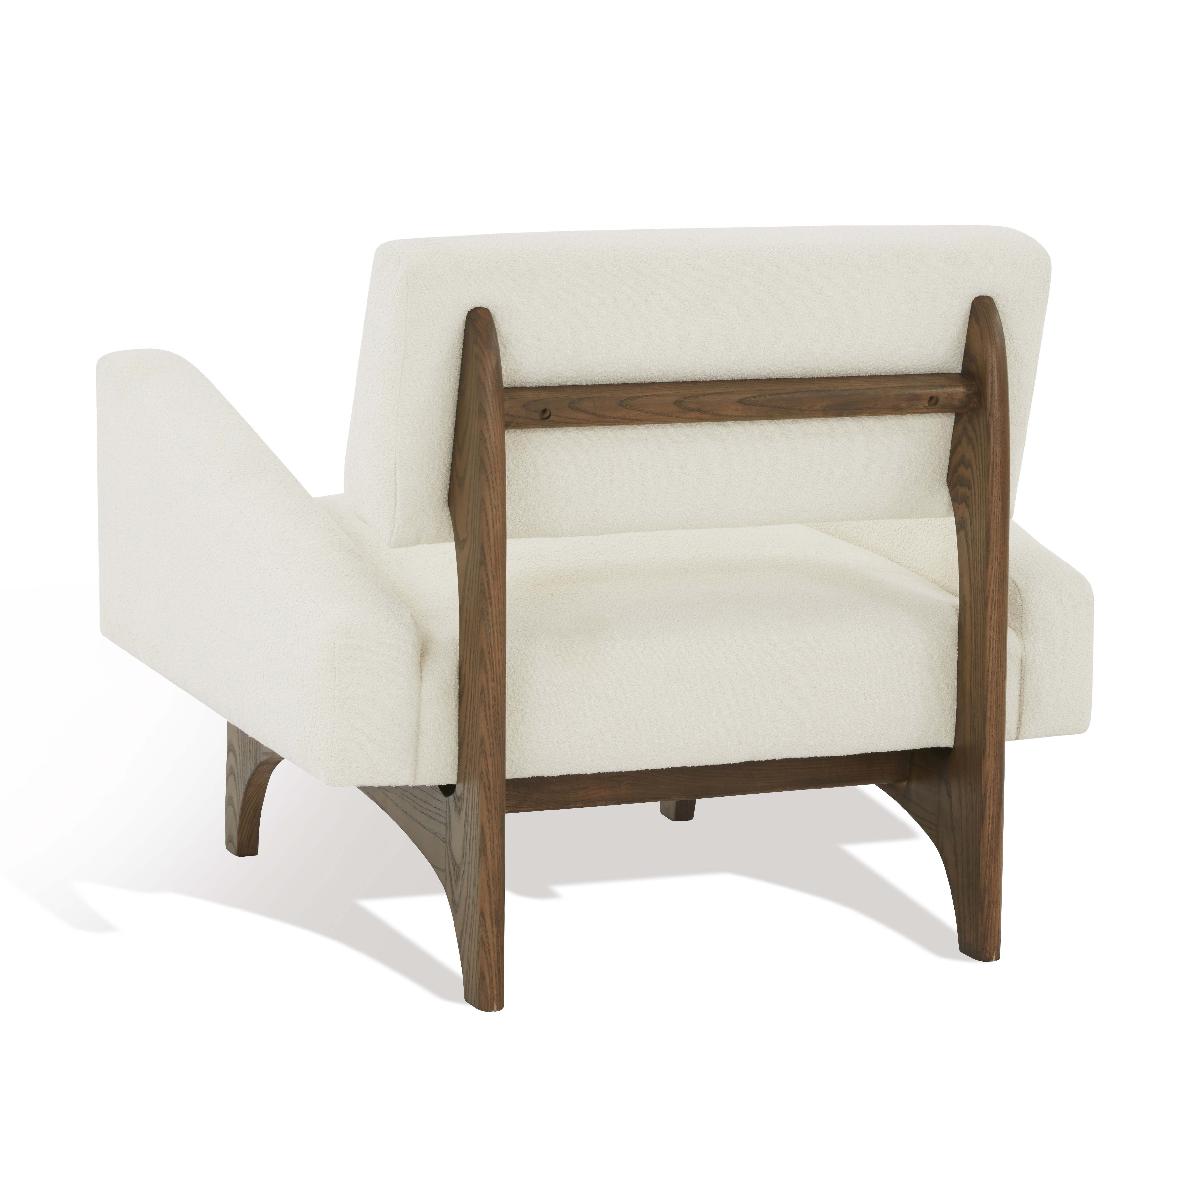 Safavieh Couture Davidson Scandinavian Accent Chair - Ivory / Dark Brown